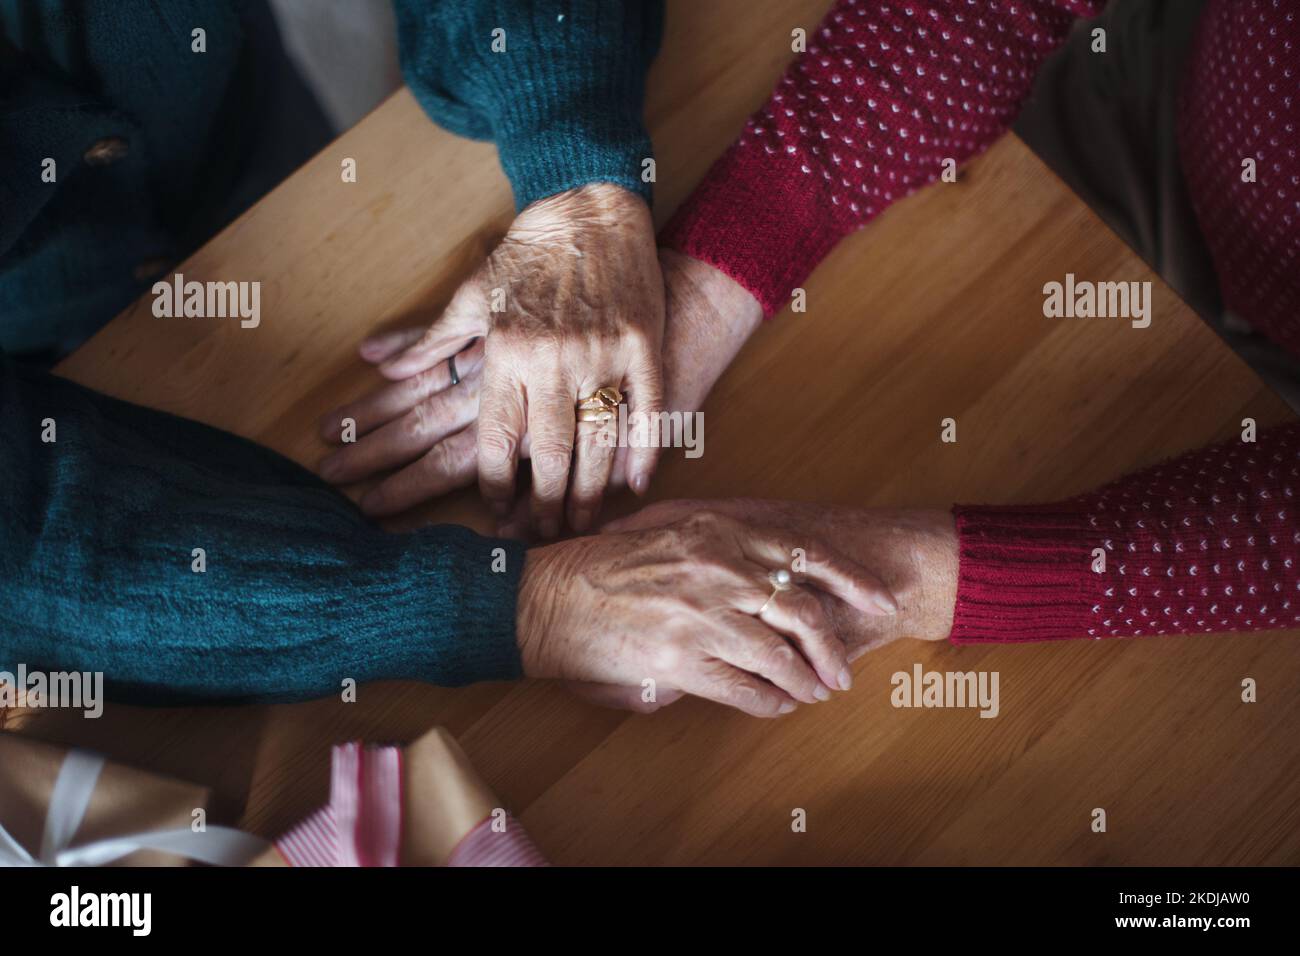 Vue de dessus des mains de couple de personnes âgées se tenant les unes les autres, pendant Noël. Banque D'Images